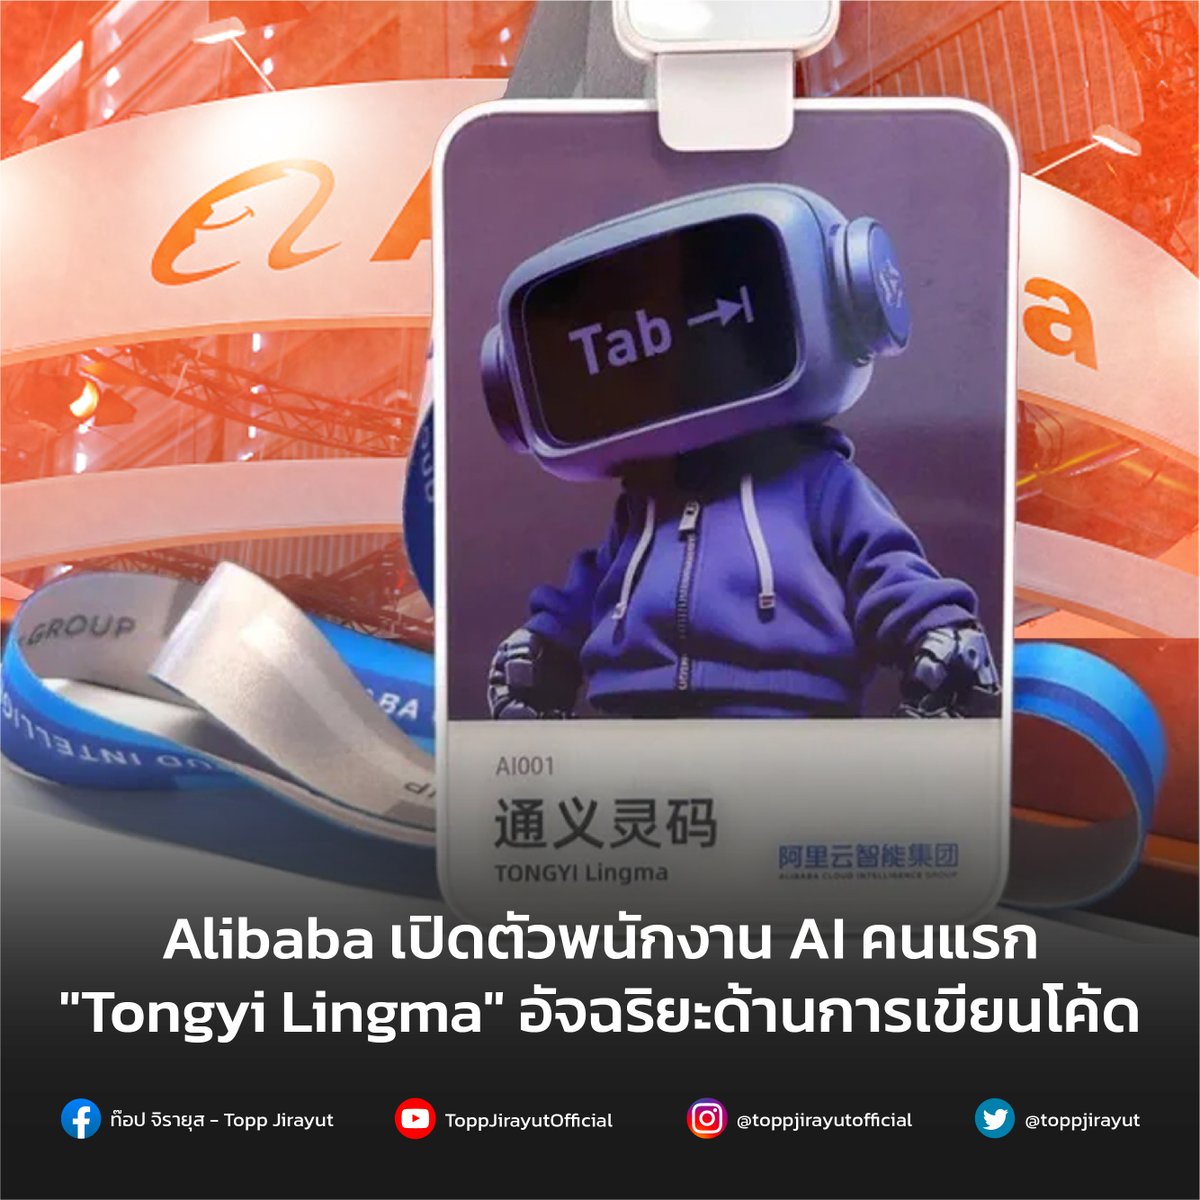 Alibaba Cloud AI พัฒนา AI พนักงานคนแรกโดยใช้ชื่อว่า Tongyi Lingma ผู้ช่วยเขียนโปรแกรม AI ในด้านดาราศาสตร์เพื่อช่วยให้นักพัฒนาจัดการกับข้อกังวลทางเทคนิคอย่างการเขียนโค้ดแต่ไม่ใช่การแทนที่มนุษย์อย่างสิ้นเชิง bit.ly/3PKOCb5 #Alibaba #AI #Toppjirayut #ท๊อปจิรายุส